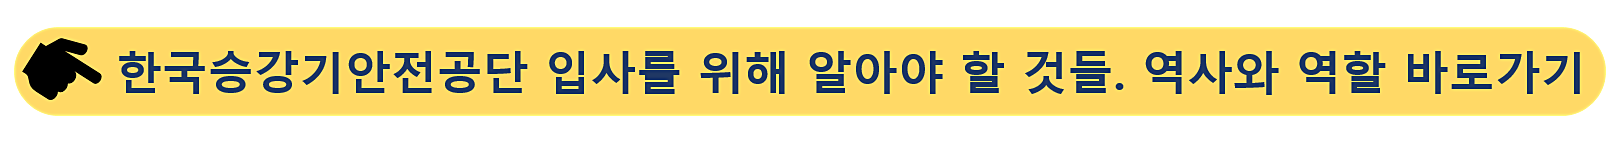 한국승강기안전공단-입사